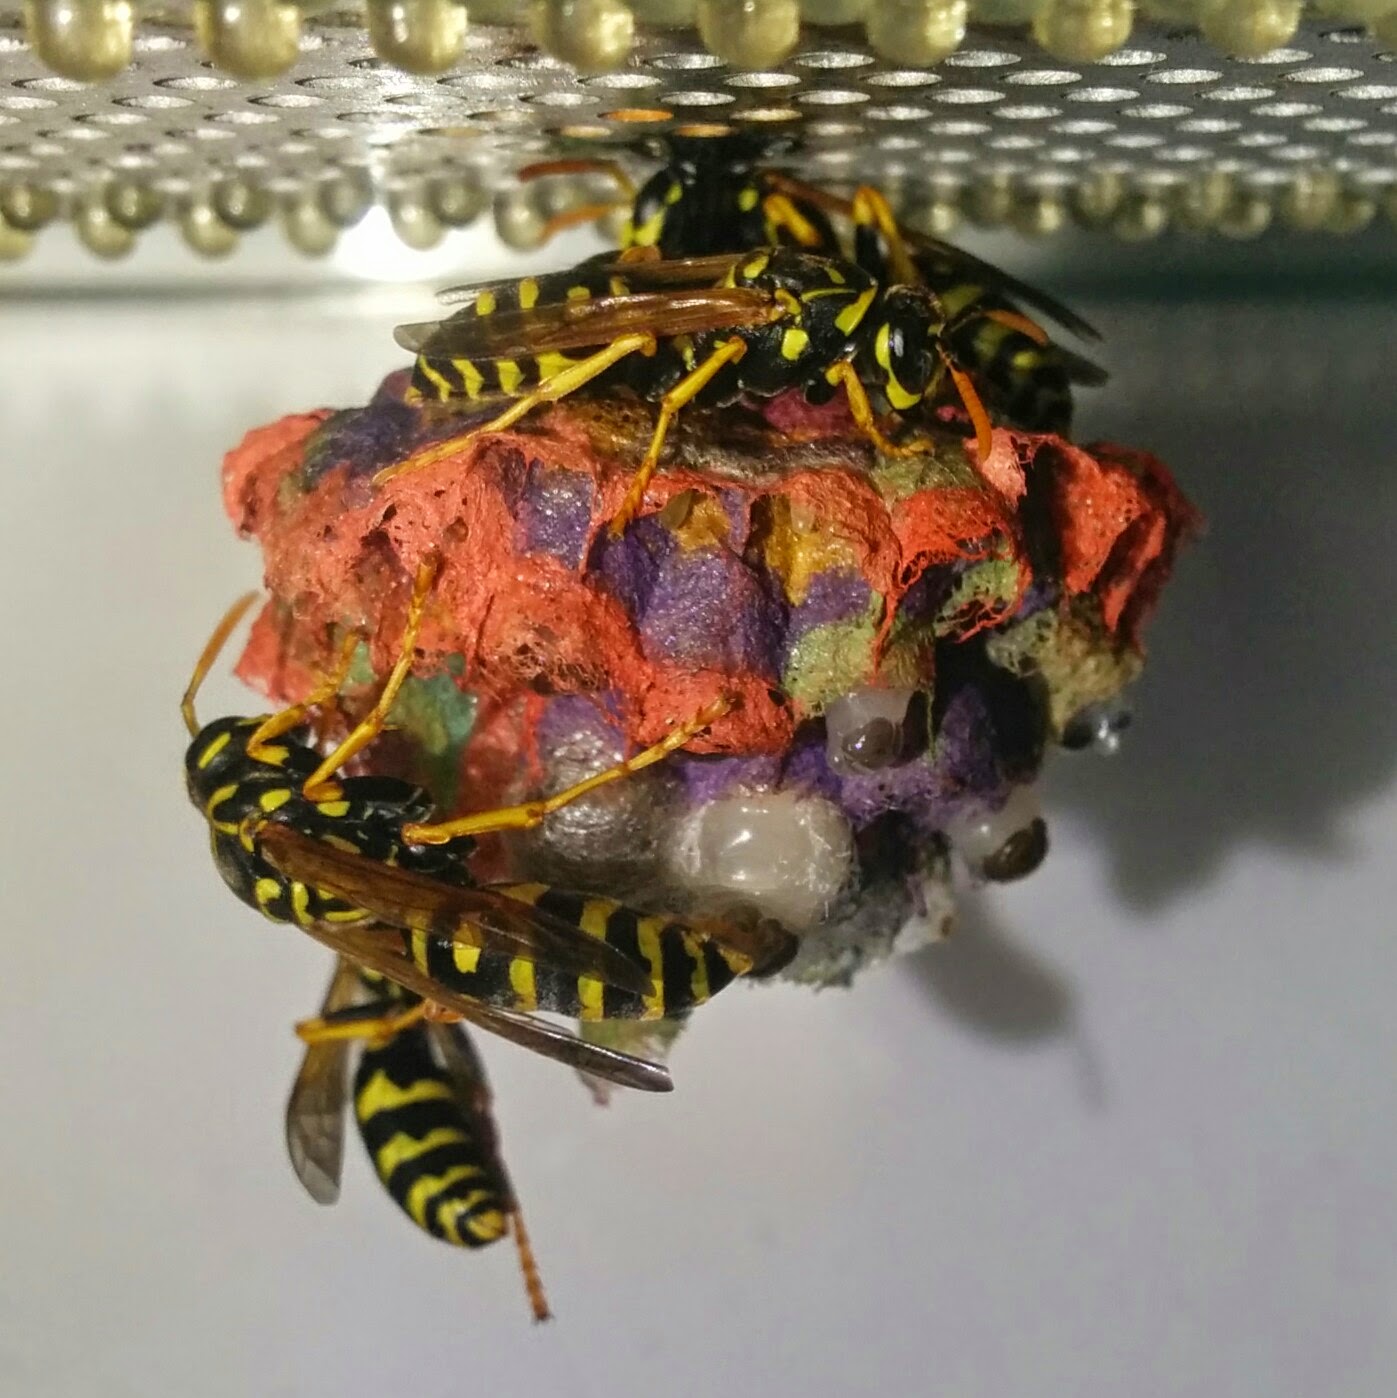 Осы строят гнезда, раскрашенные во все цвета радуги. Rainbow colored nests built by wasps